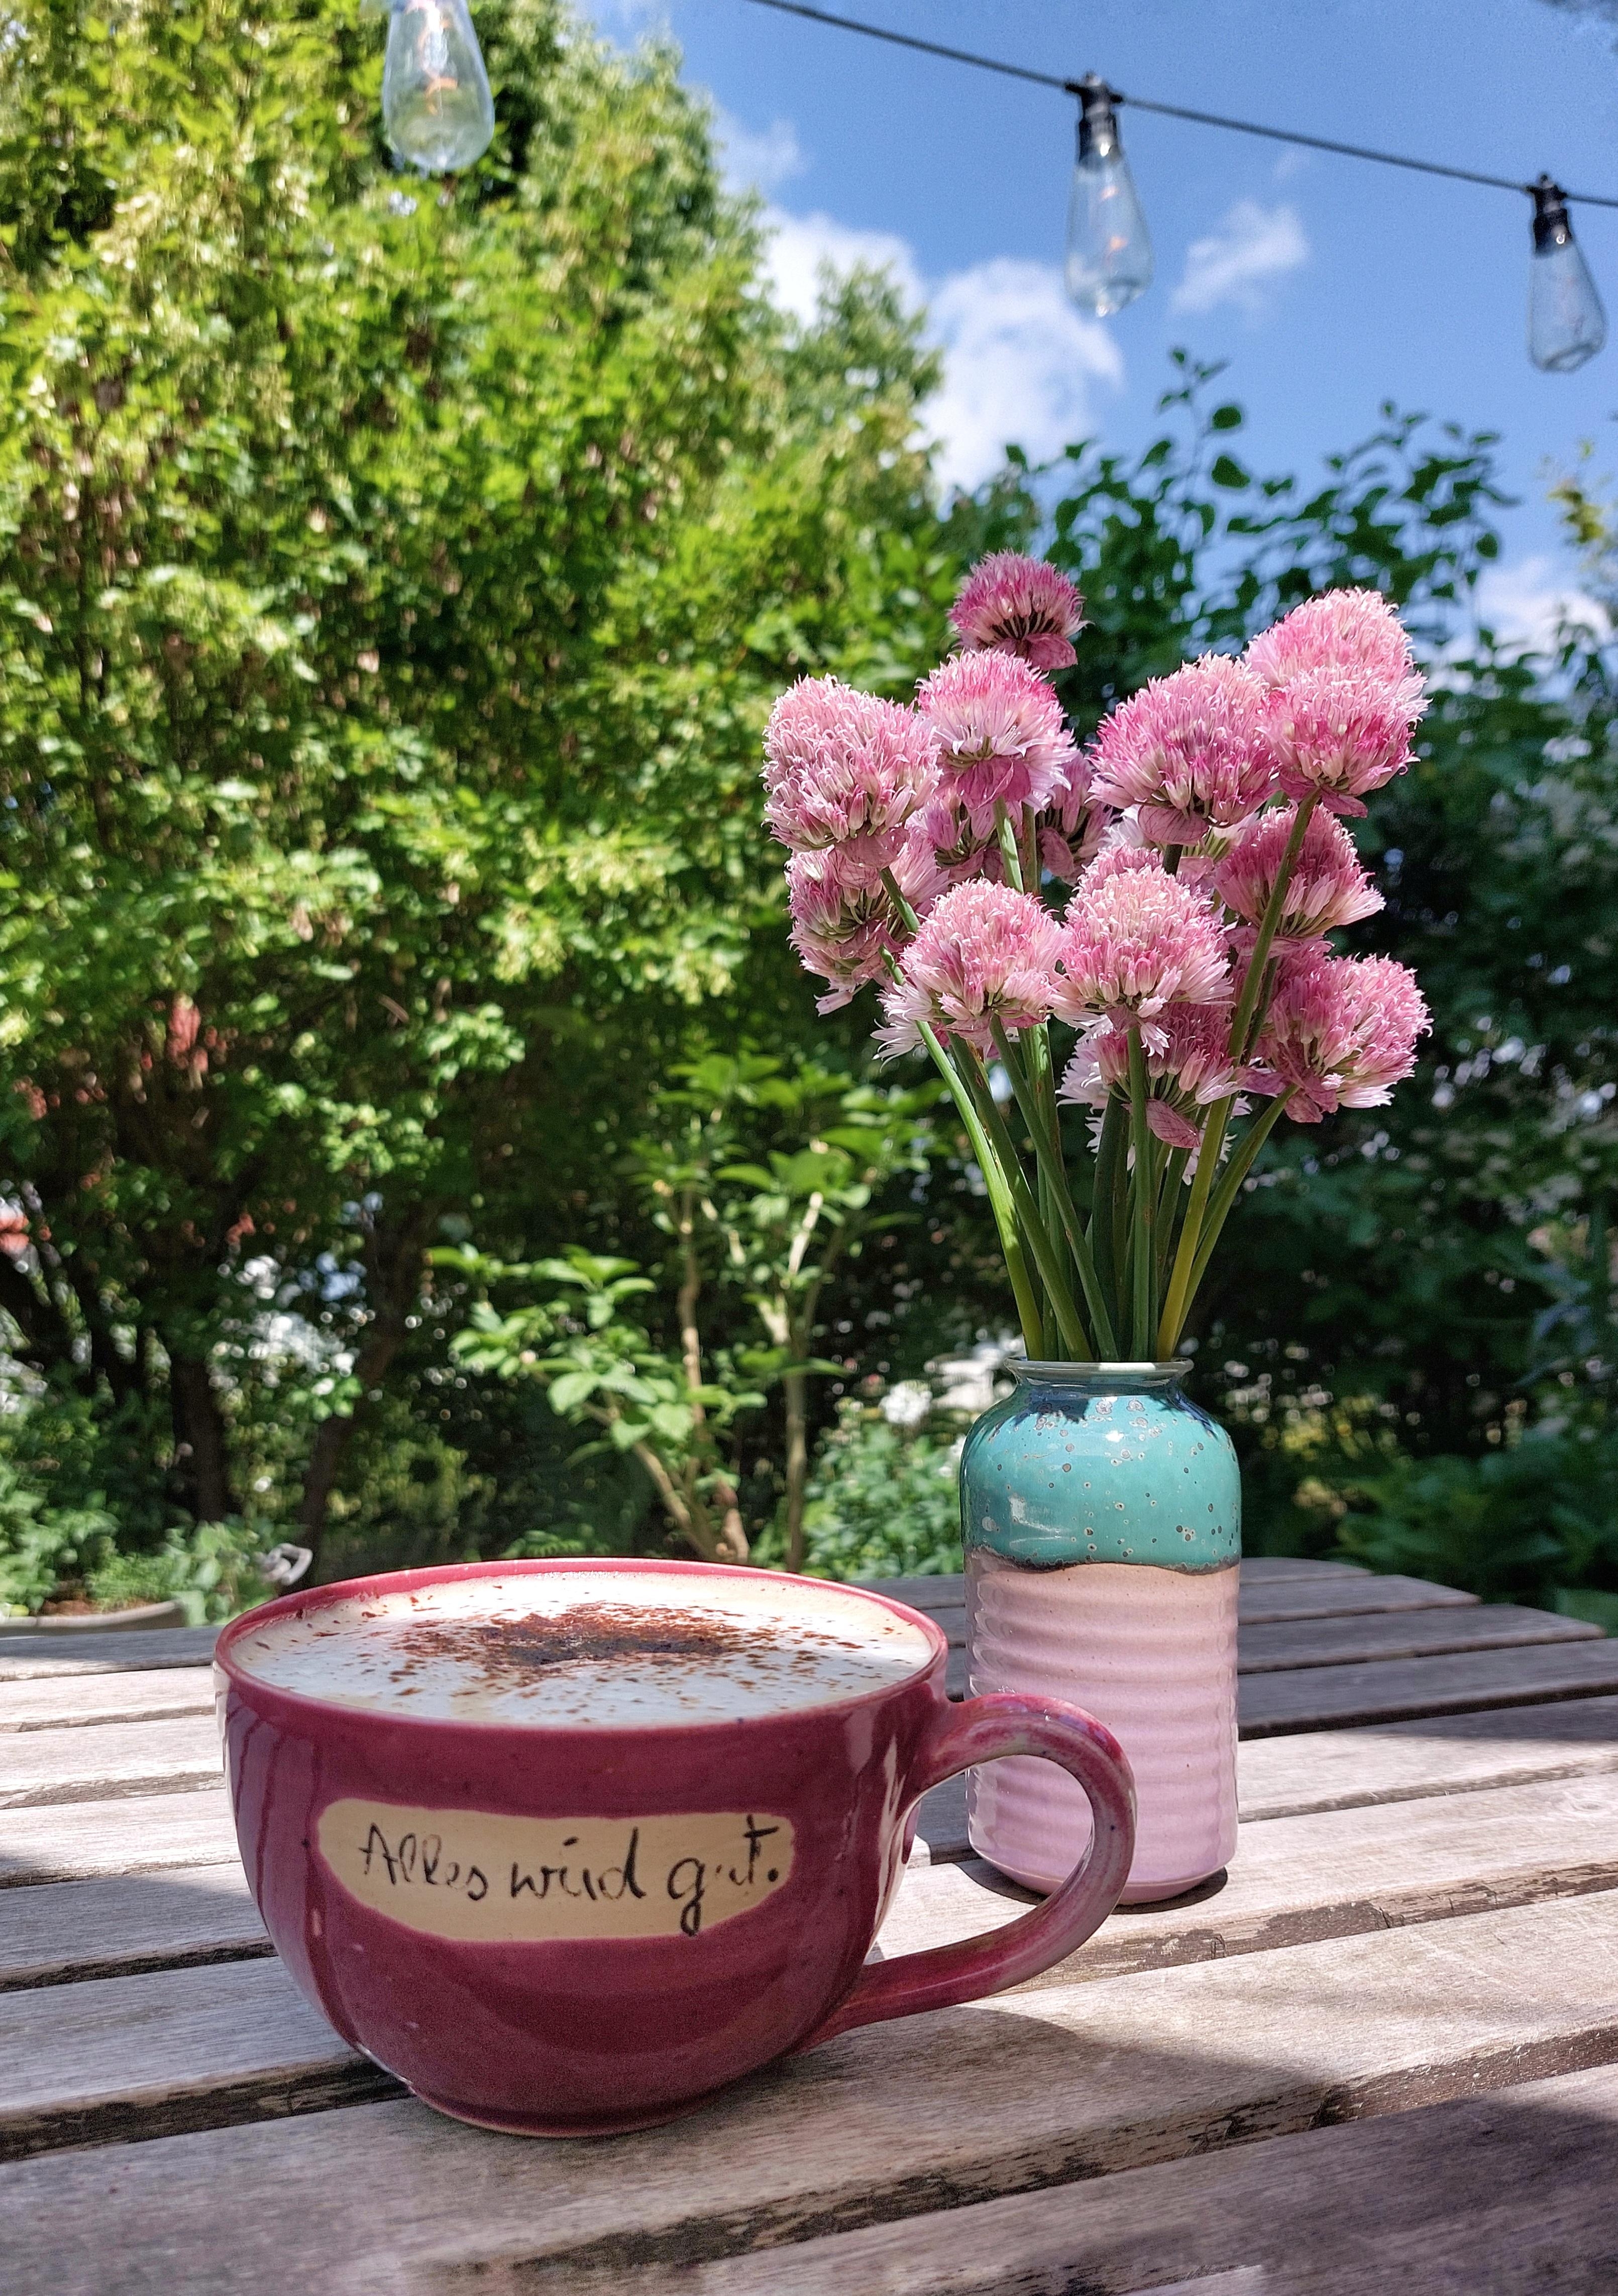 Heute einfach mal prokrastinieren und einen Milchkaffee auf der Terrasse genießen.☀️🌿 #kaffeeliebe #livingchallenge